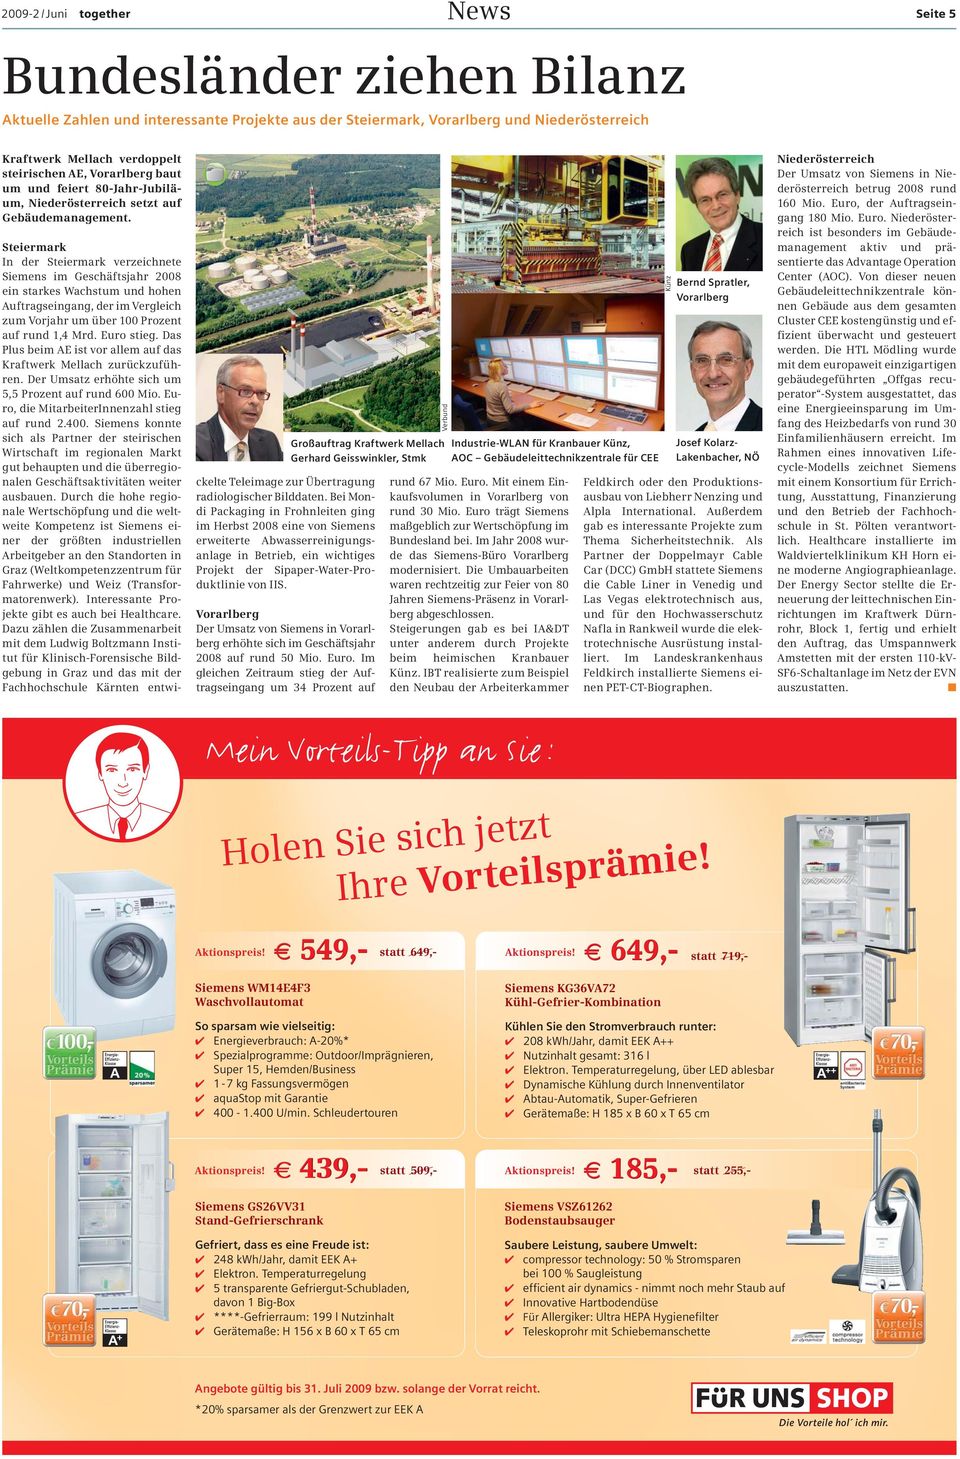 Großauftrag Kraftwerk Mellach Gerhard Geisswinkler, Stmk Steiermark In der Steiermark verzeichnete Siemens im Geschäftsjahr 2008 ein starkes Wachstum und hohen Auftragseingang, der im Vergleich zum